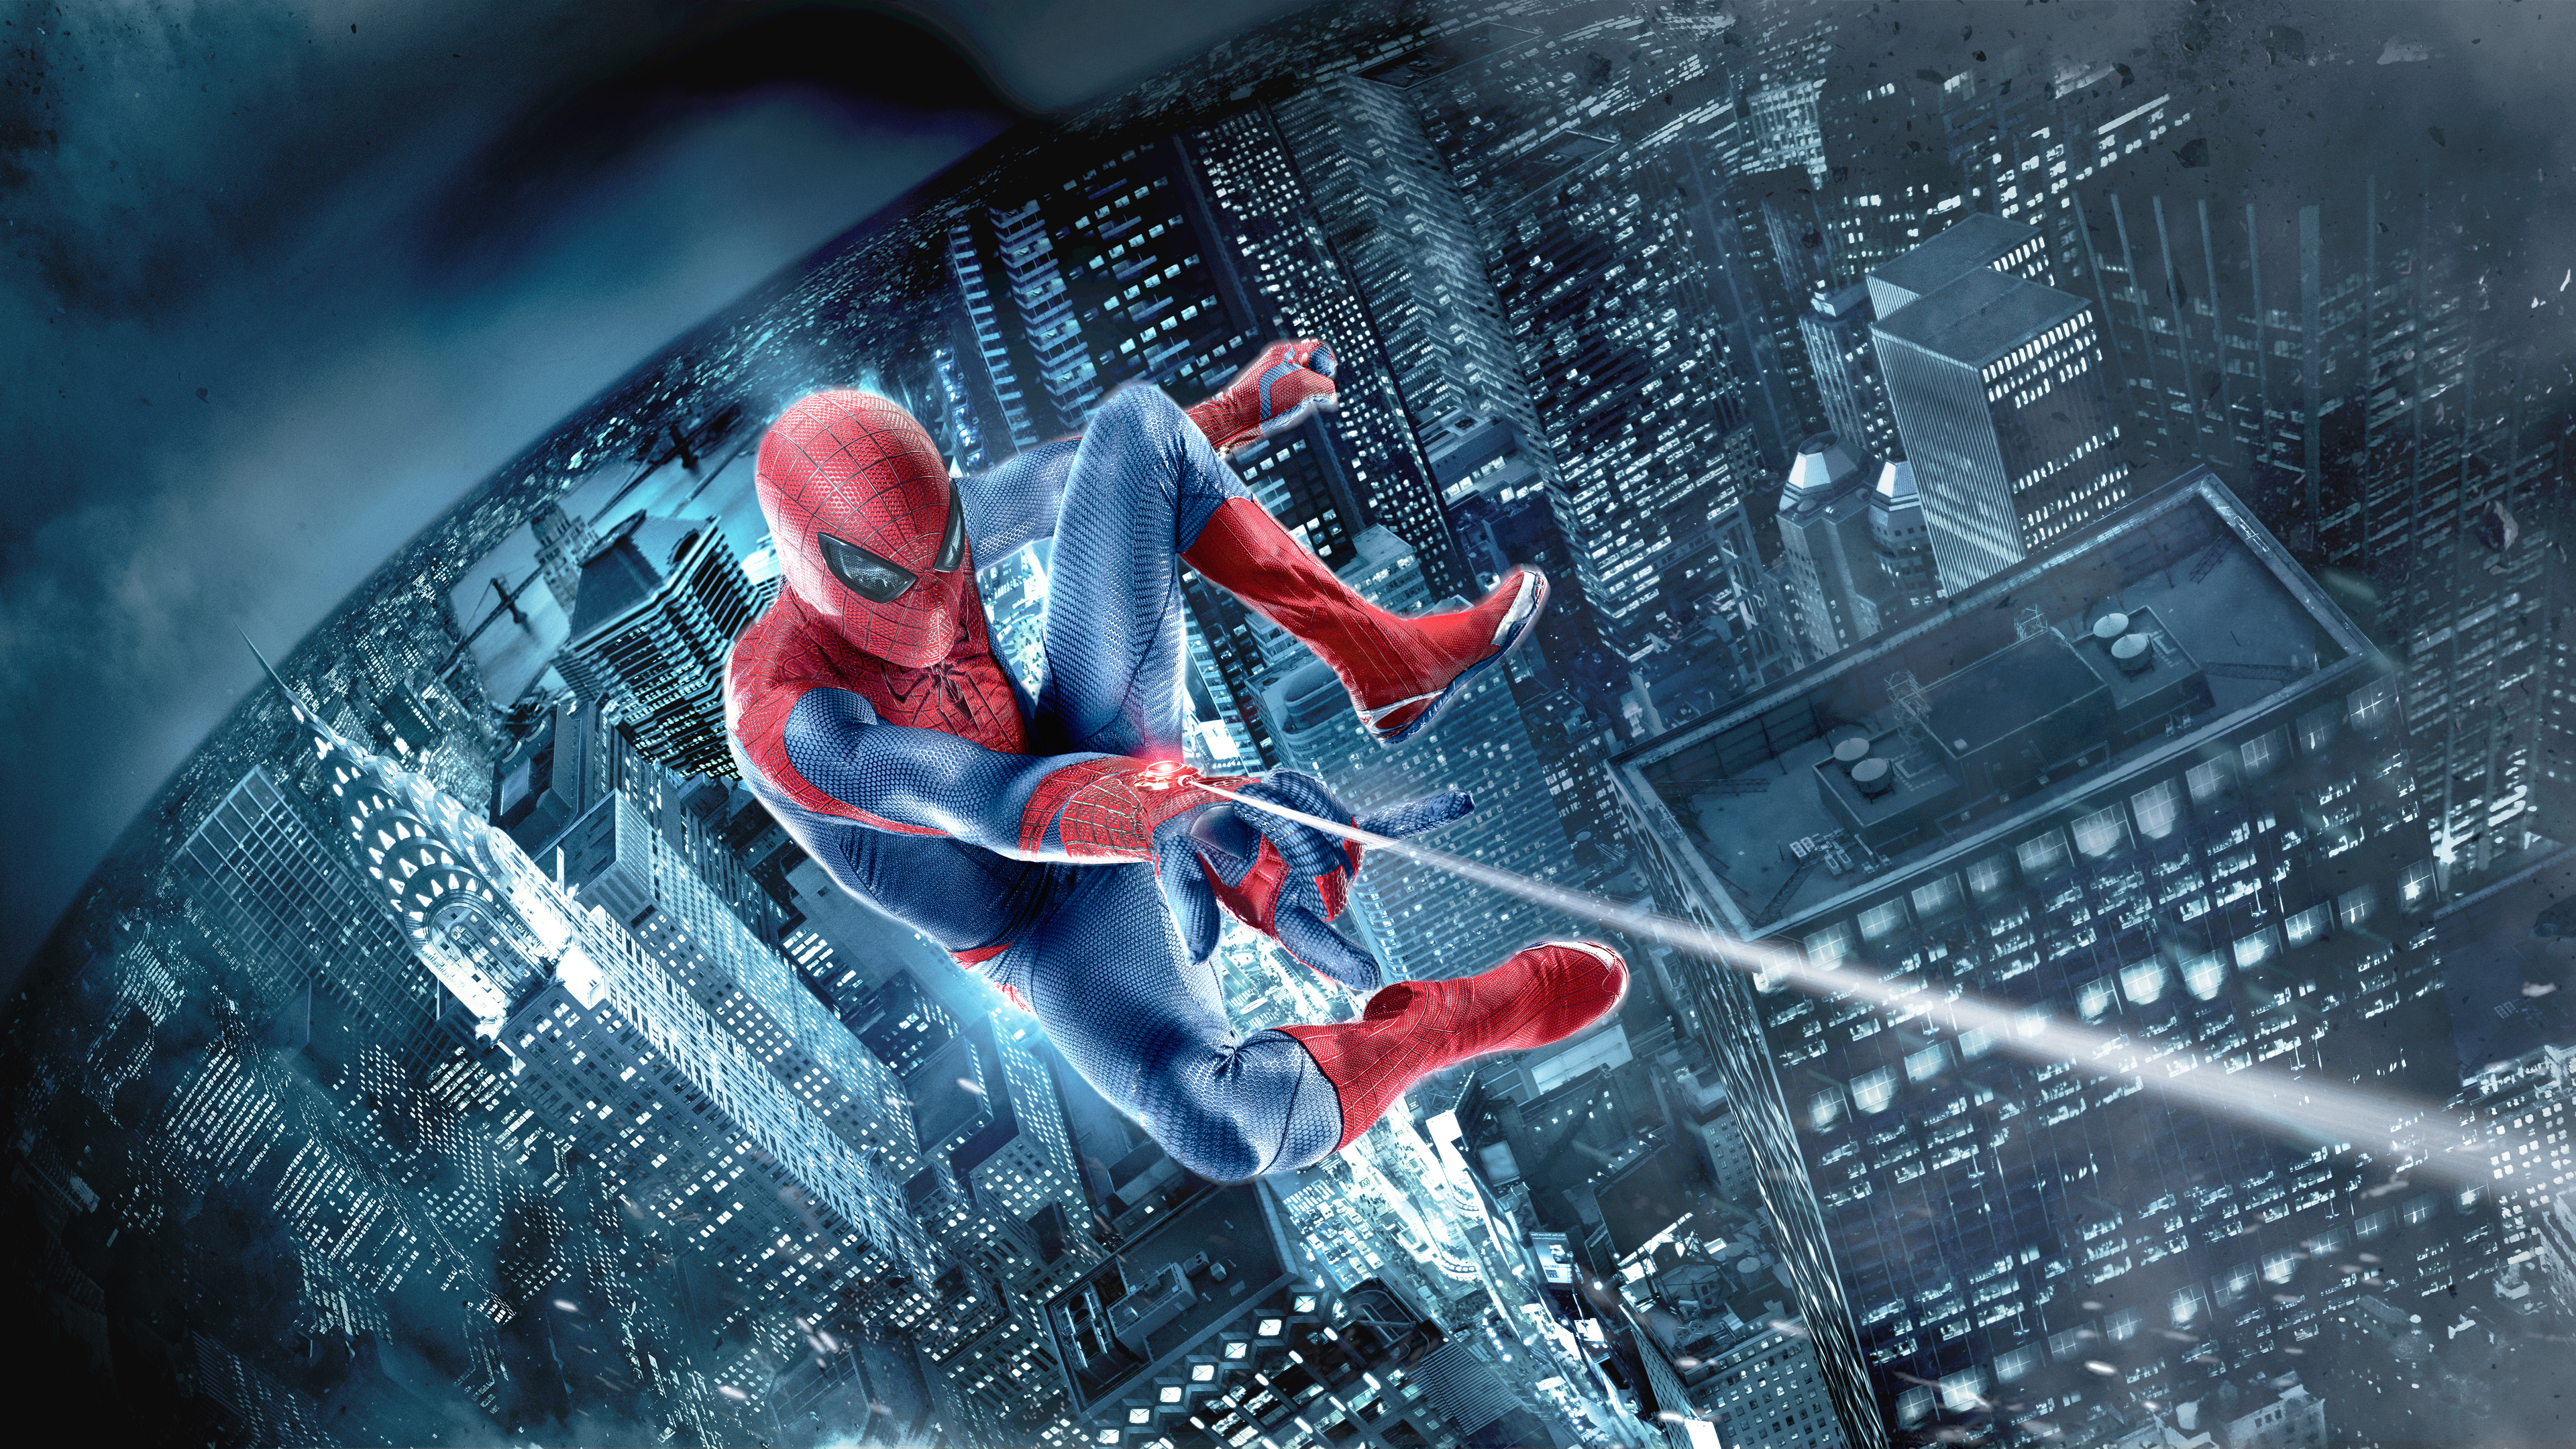 the amazing spiderman 1562104677 - The Amazing Spiderman - superheroes wallpapers, spiderman wallpapers, hd-wallpapers, 8k wallpapers, 5k wallpapers, 4k-wallpapers